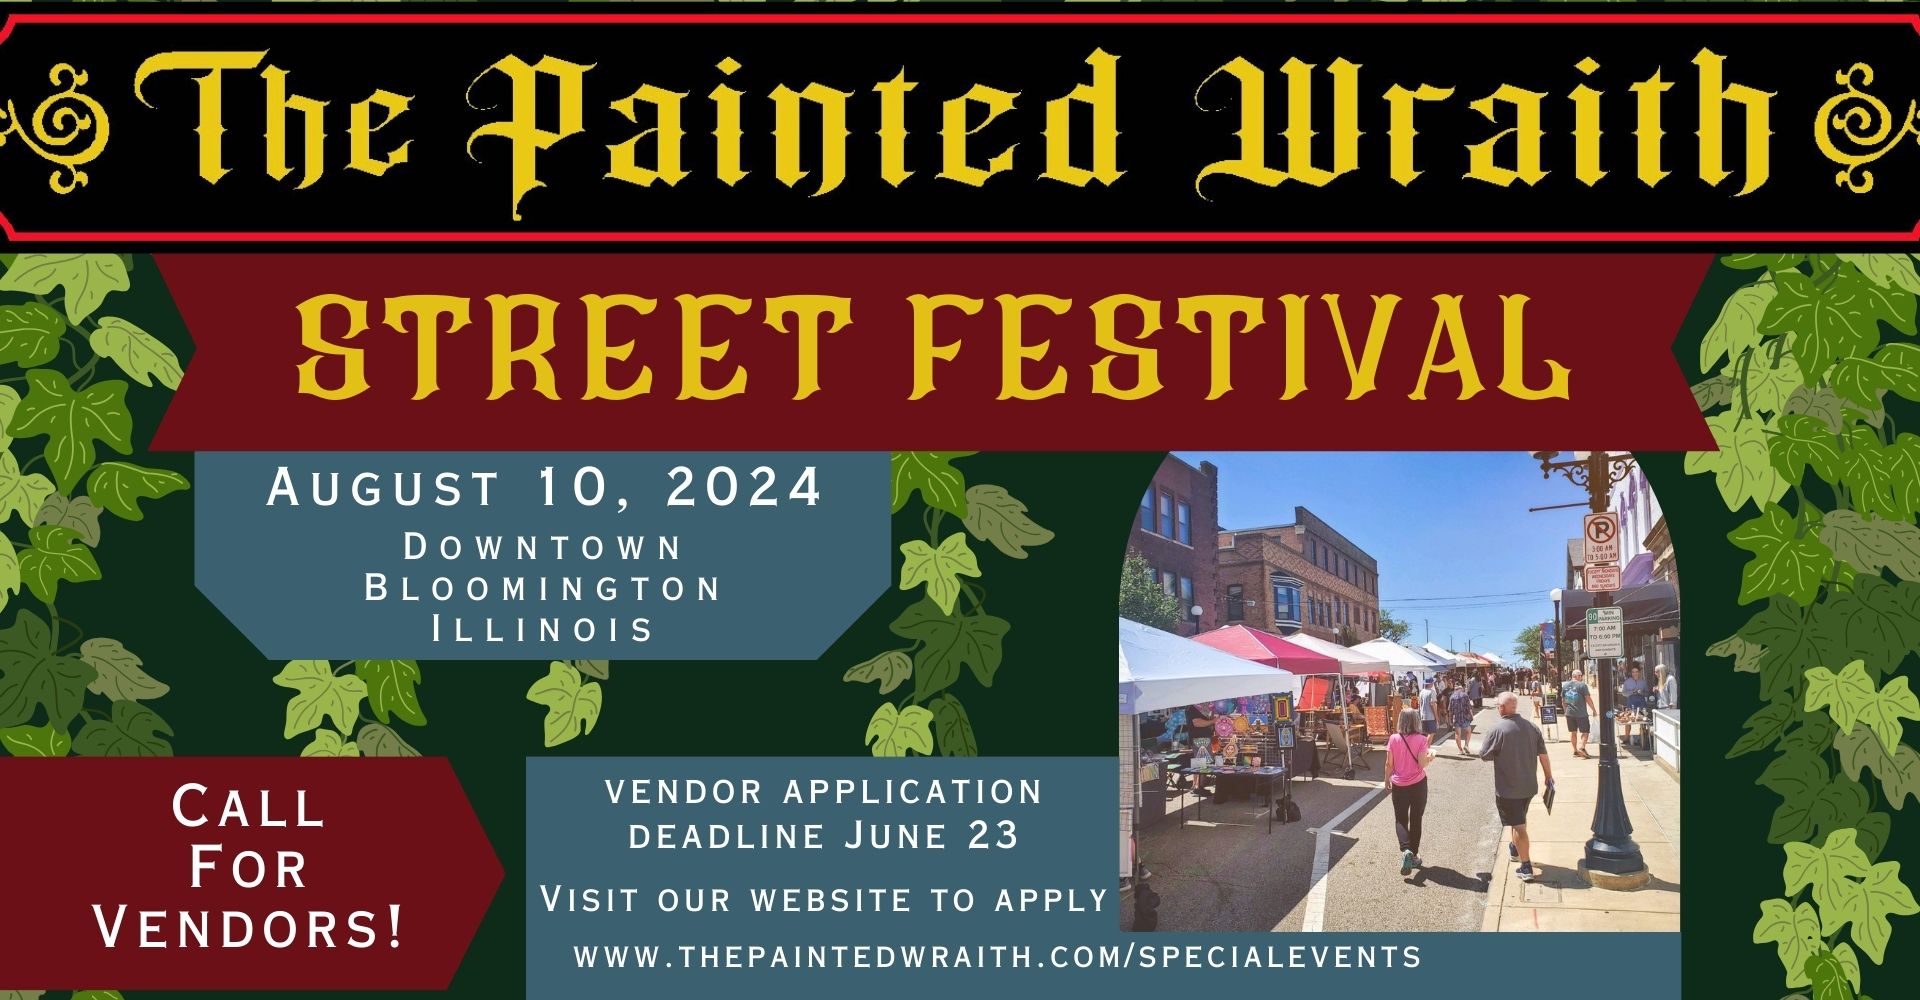 Painted Wraith Street Festival